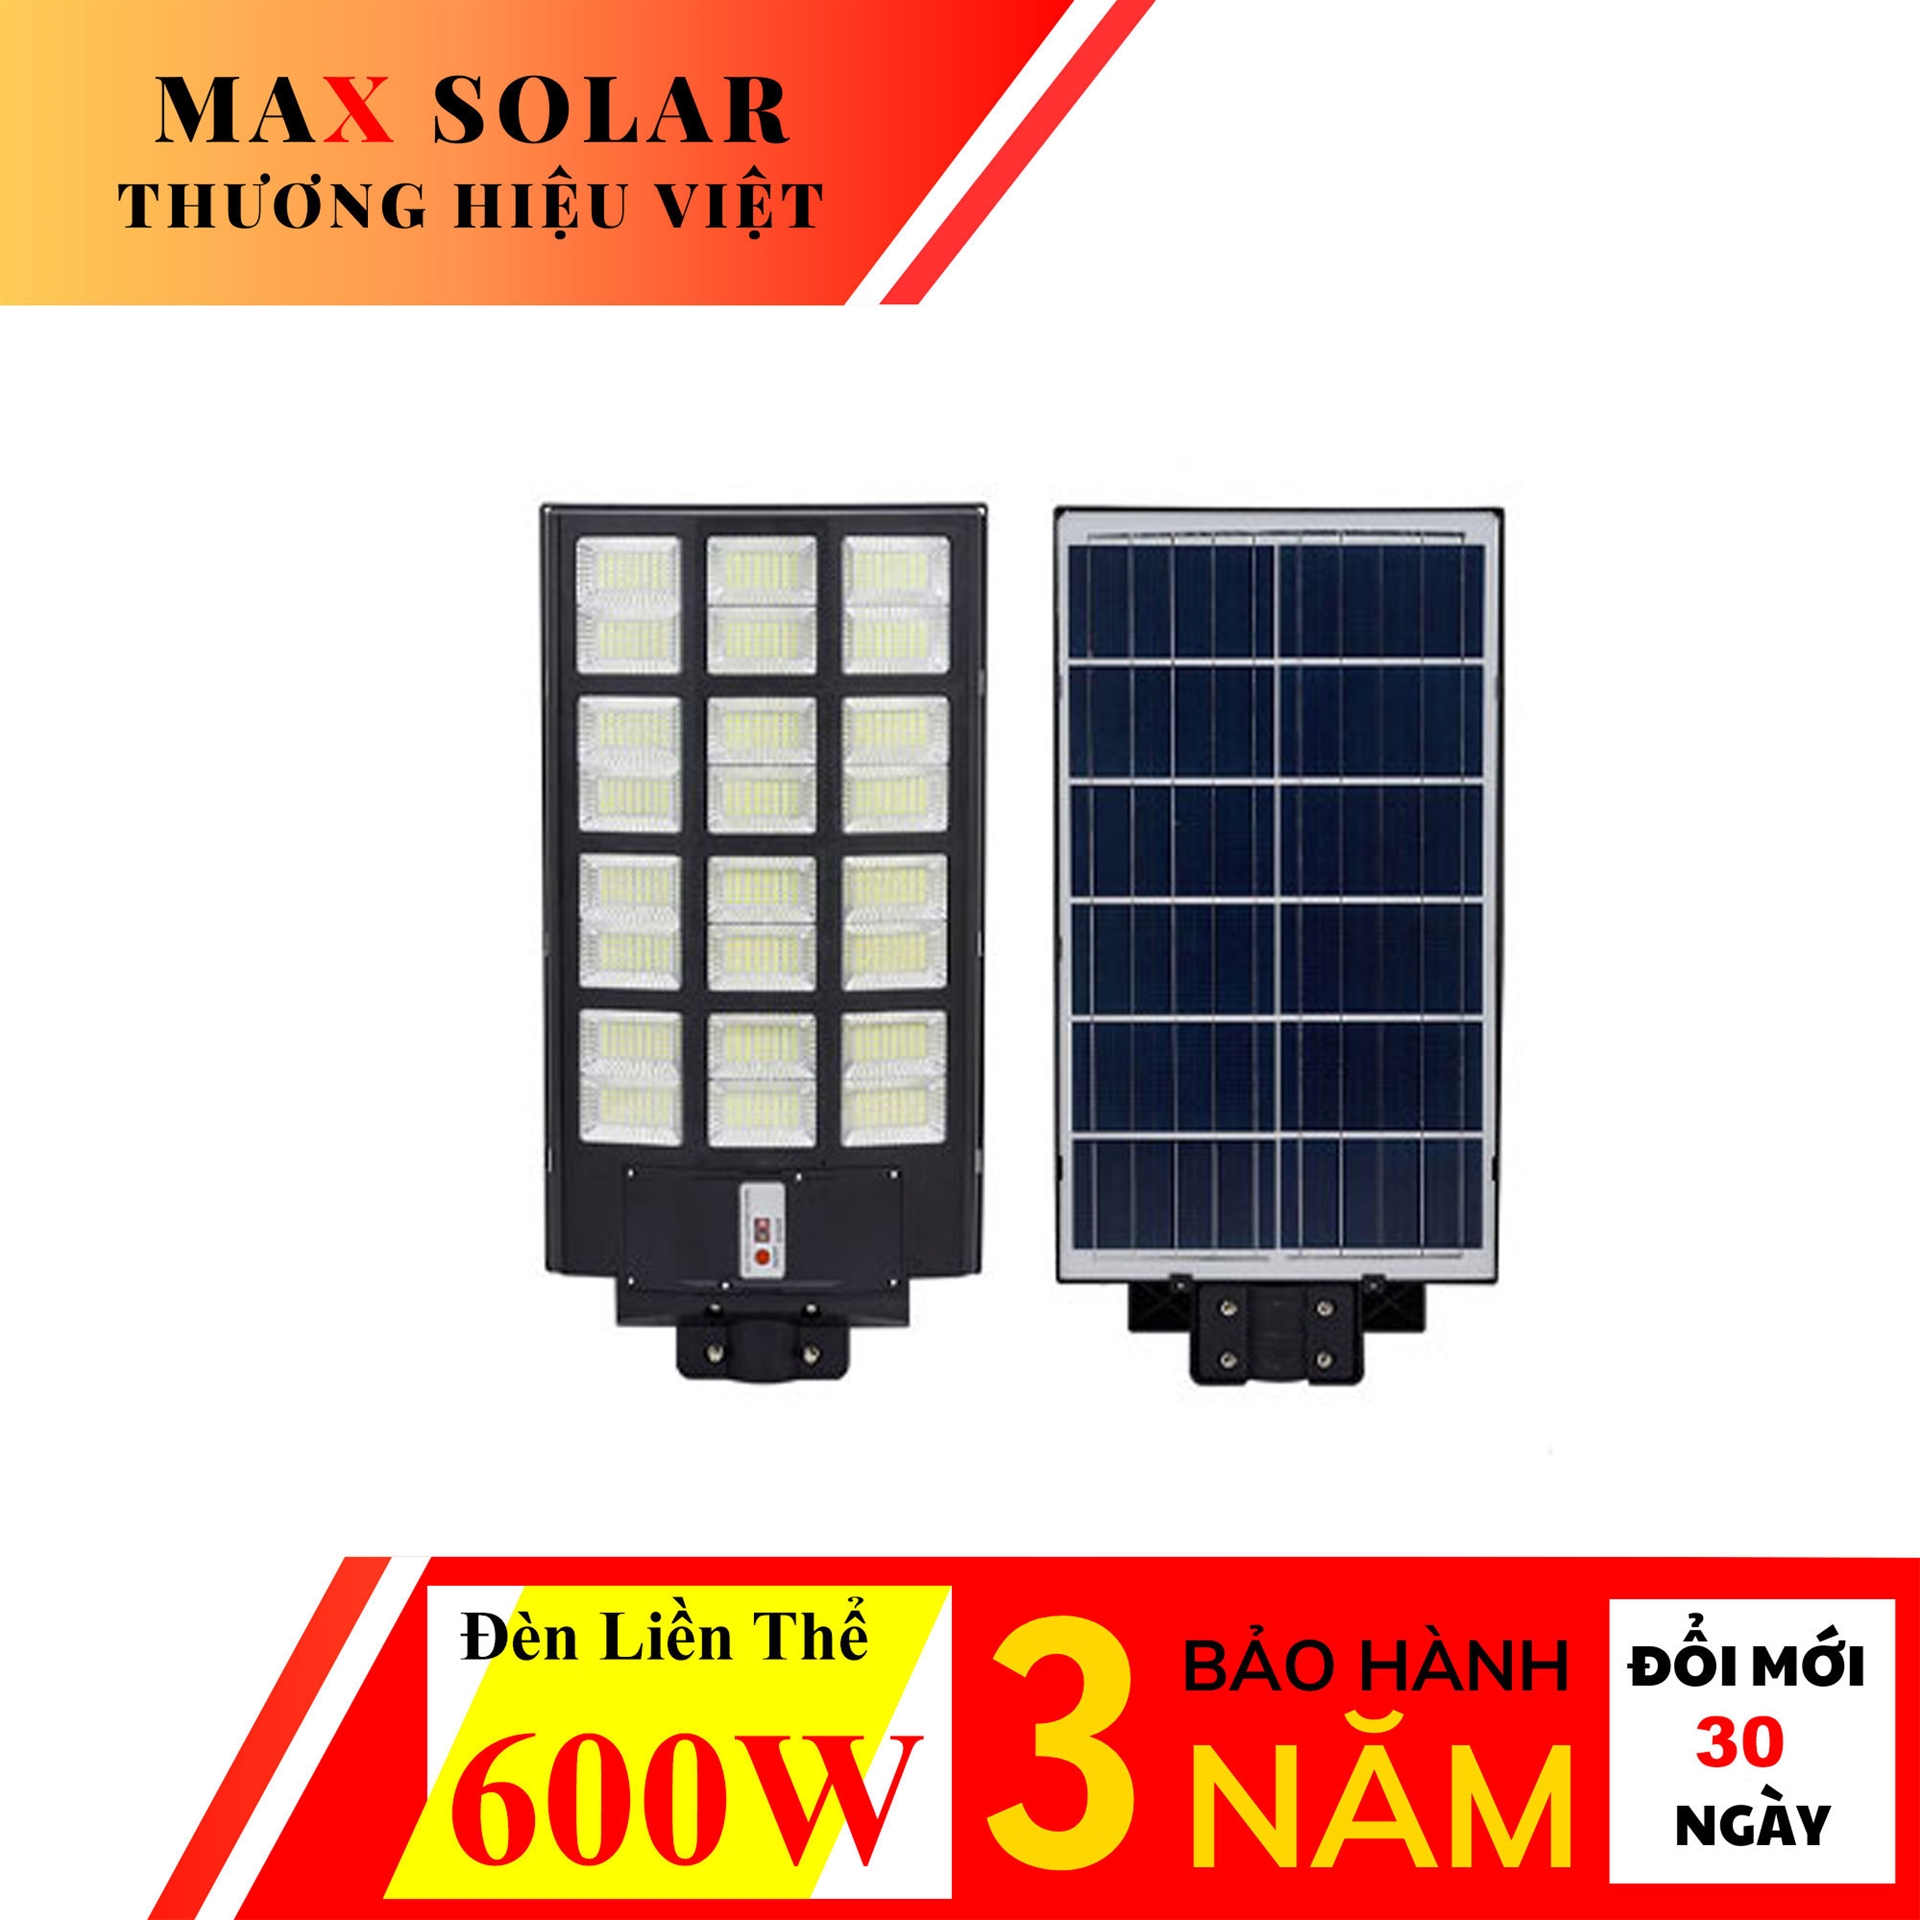 Đèn Đường Liền Thể Năng Lượng Mặt Trời 600W Max solar